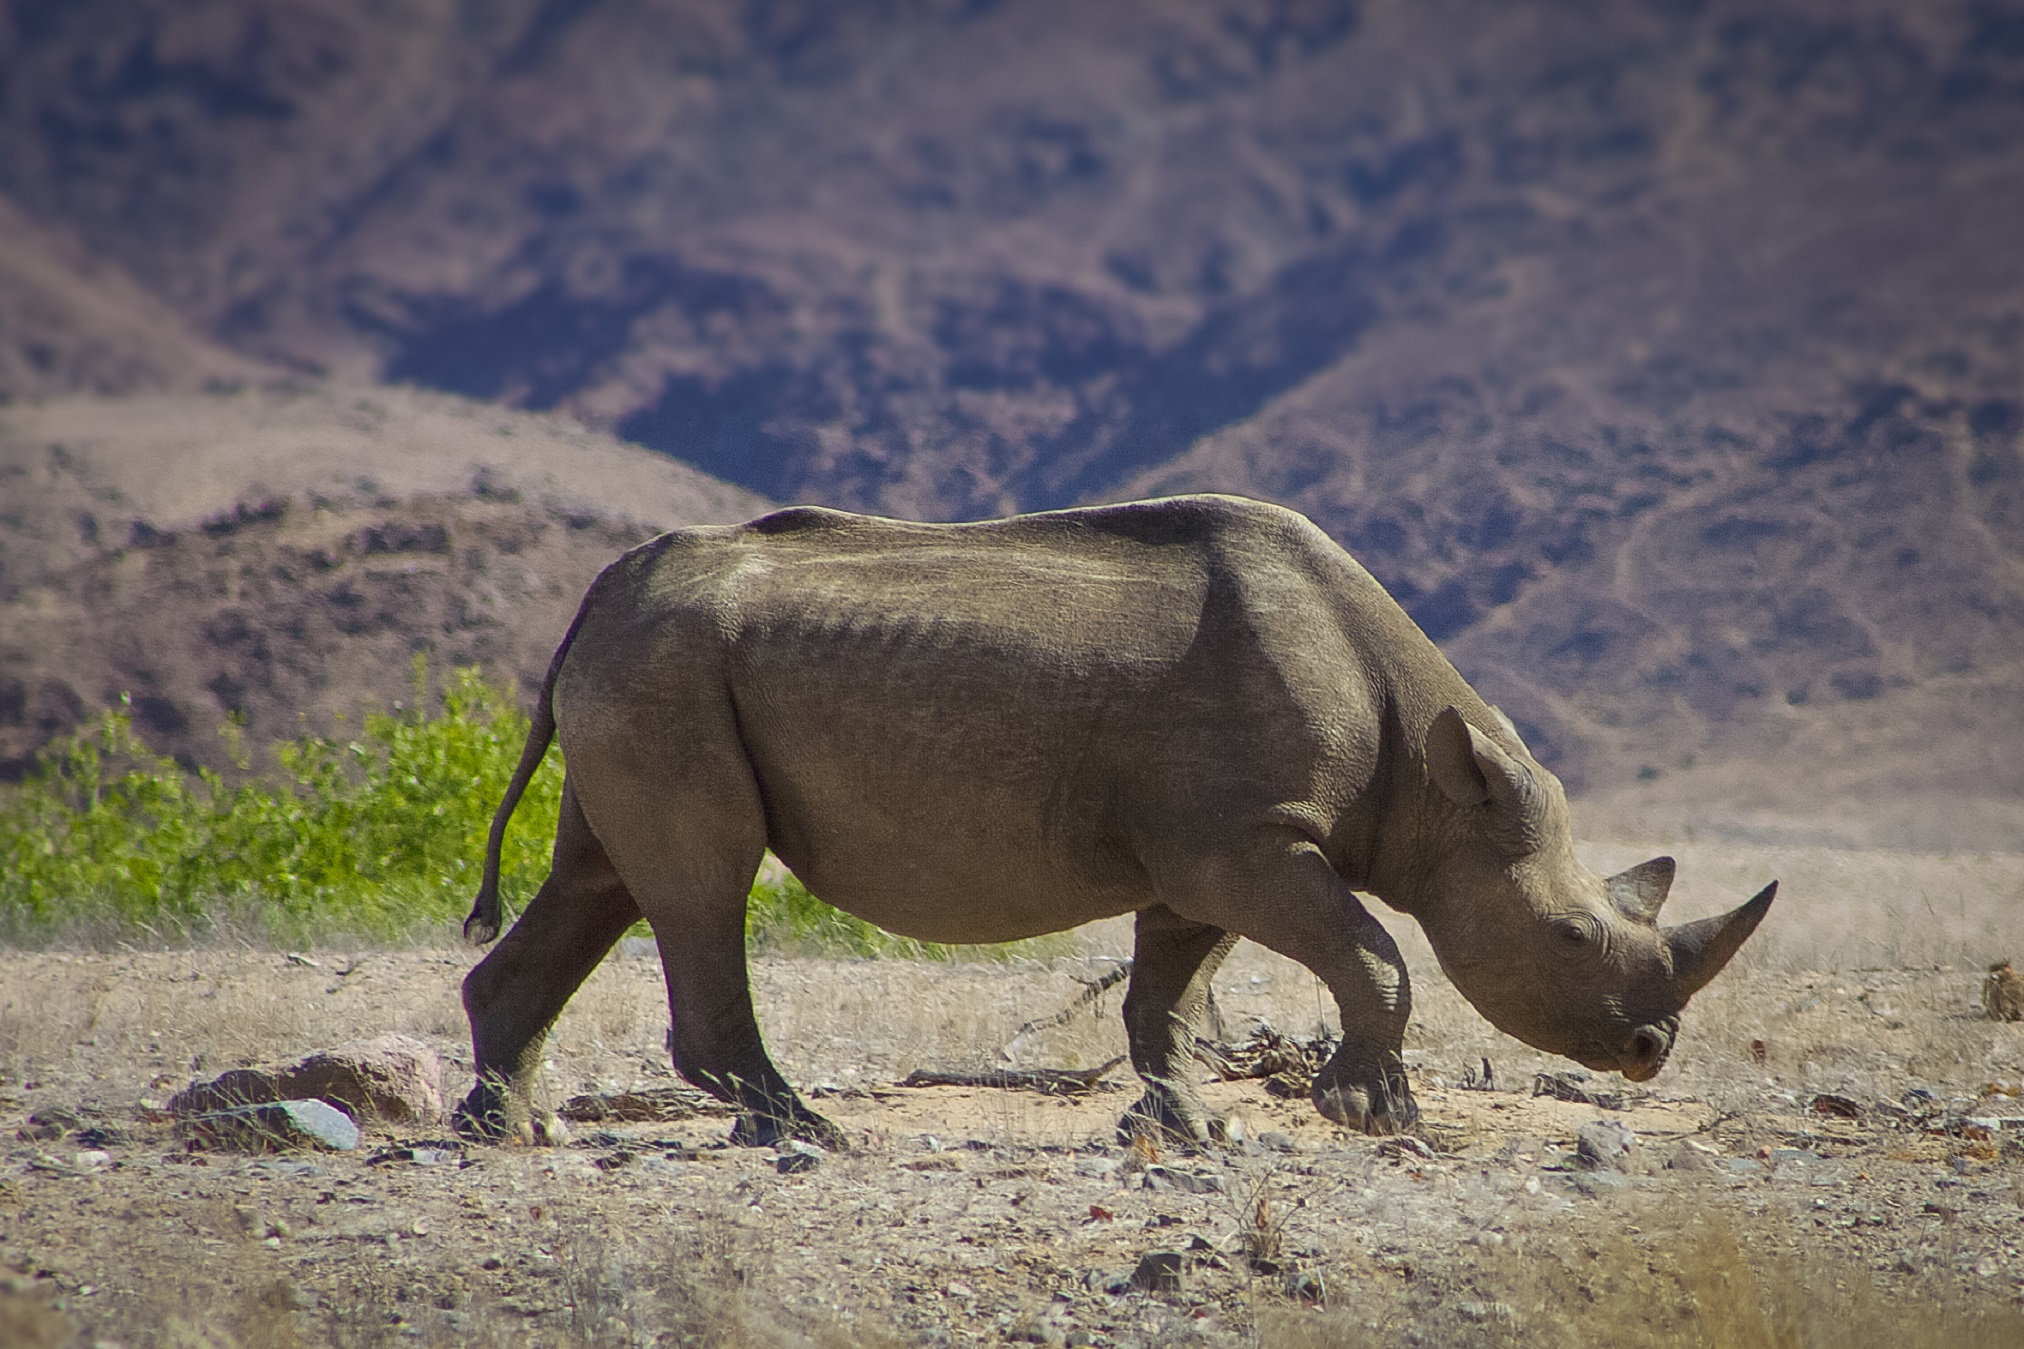 Wild black rhino in the Kaokoland, Namibia